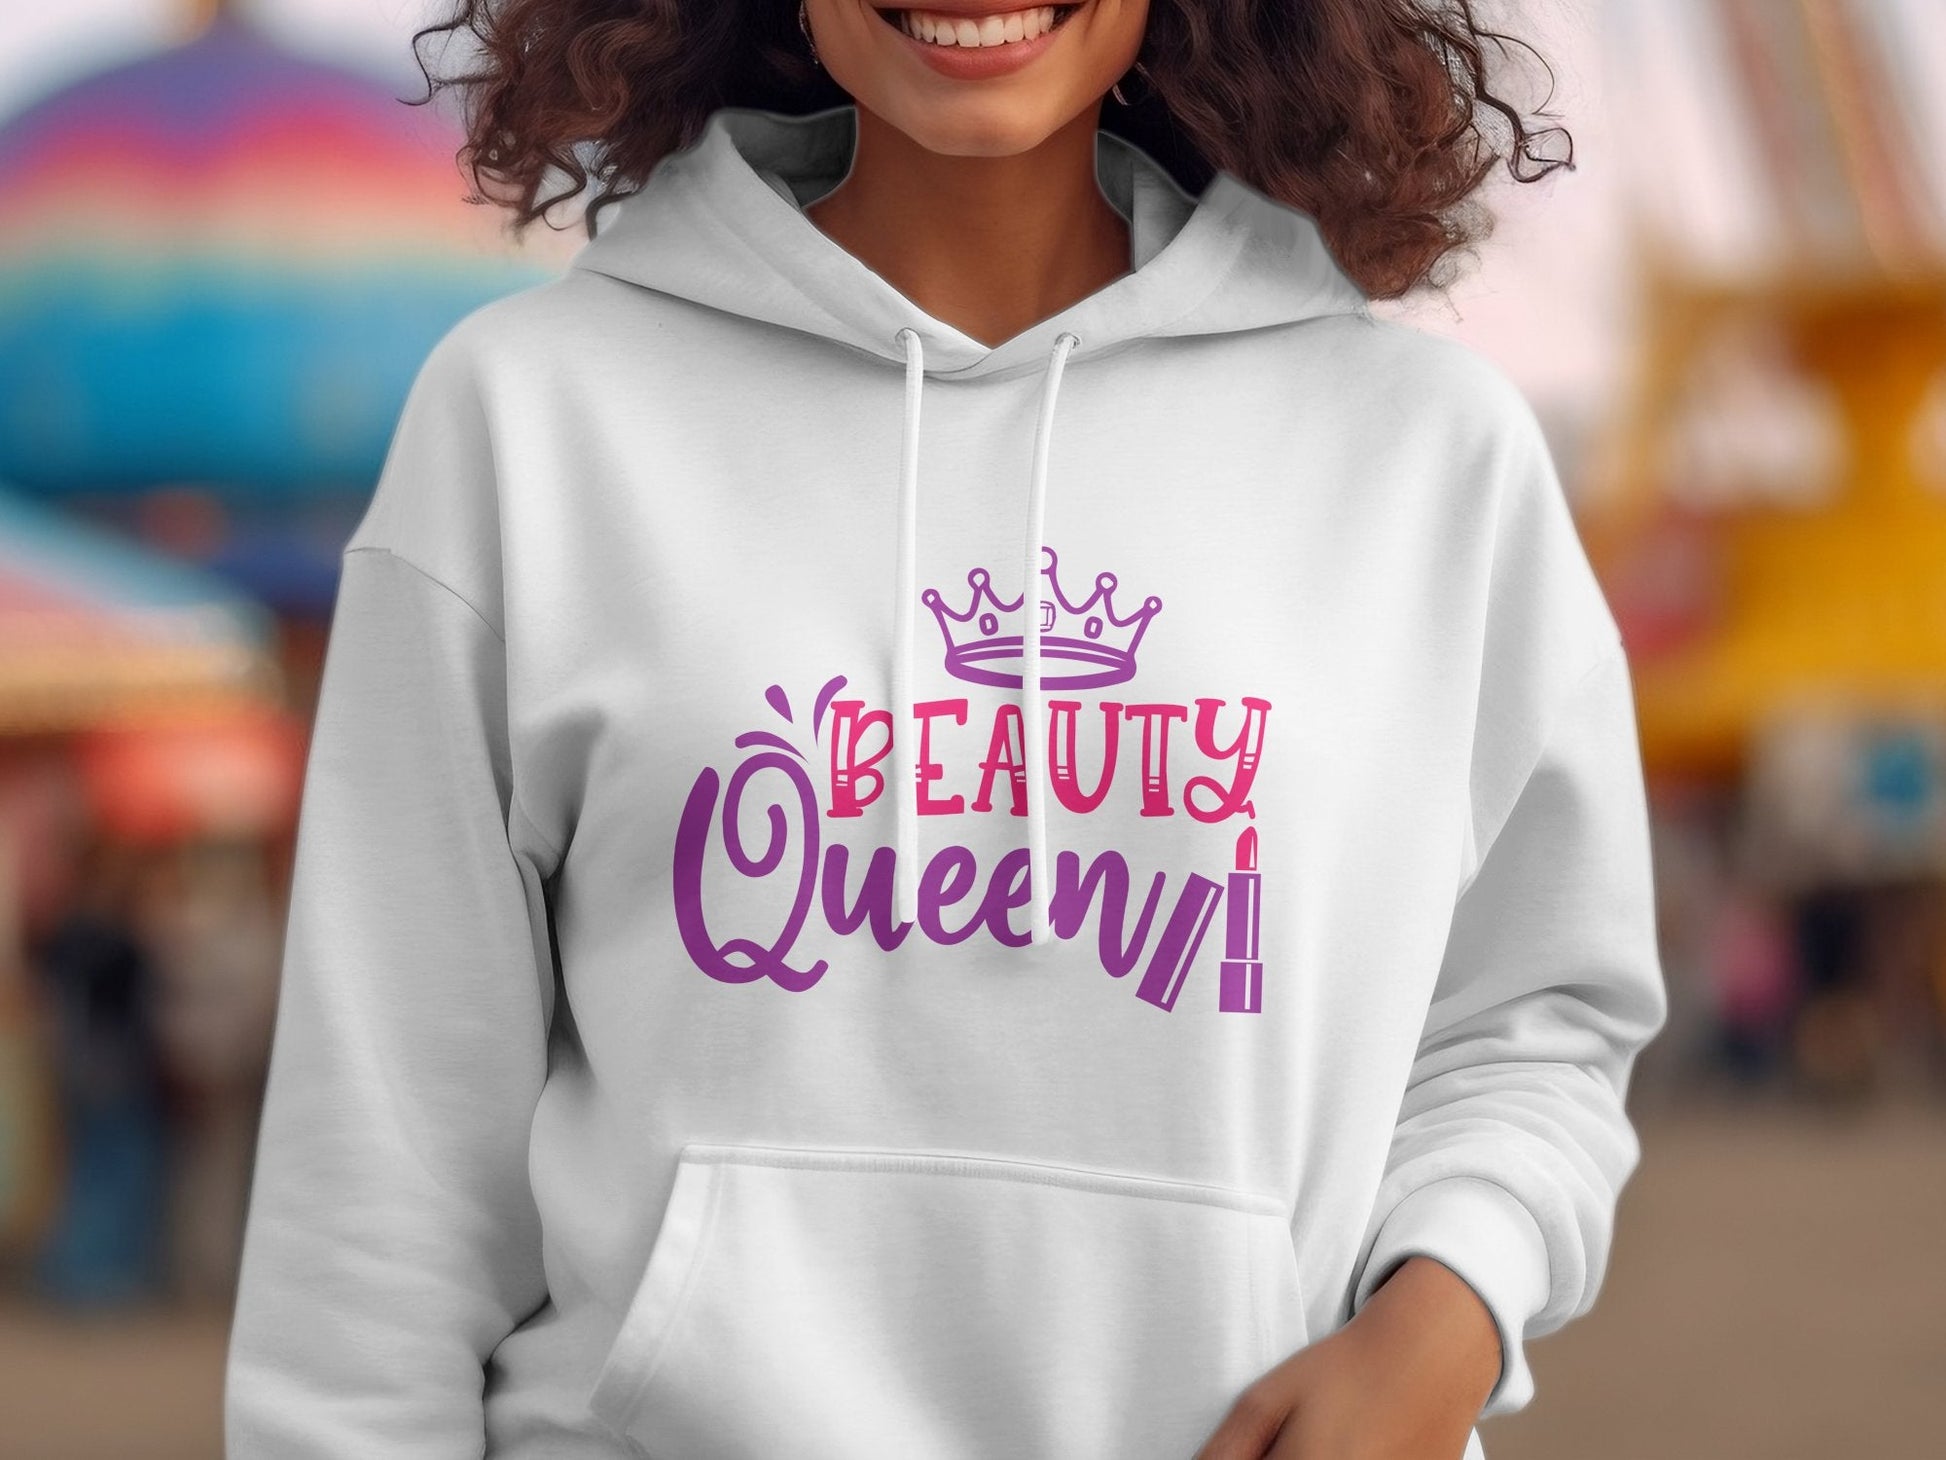 Beauty Queen Women's unique Hoodie - Premium hoodies from Lees Krazy Teez - Just $39.95! Shop now at Lees Krazy Teez